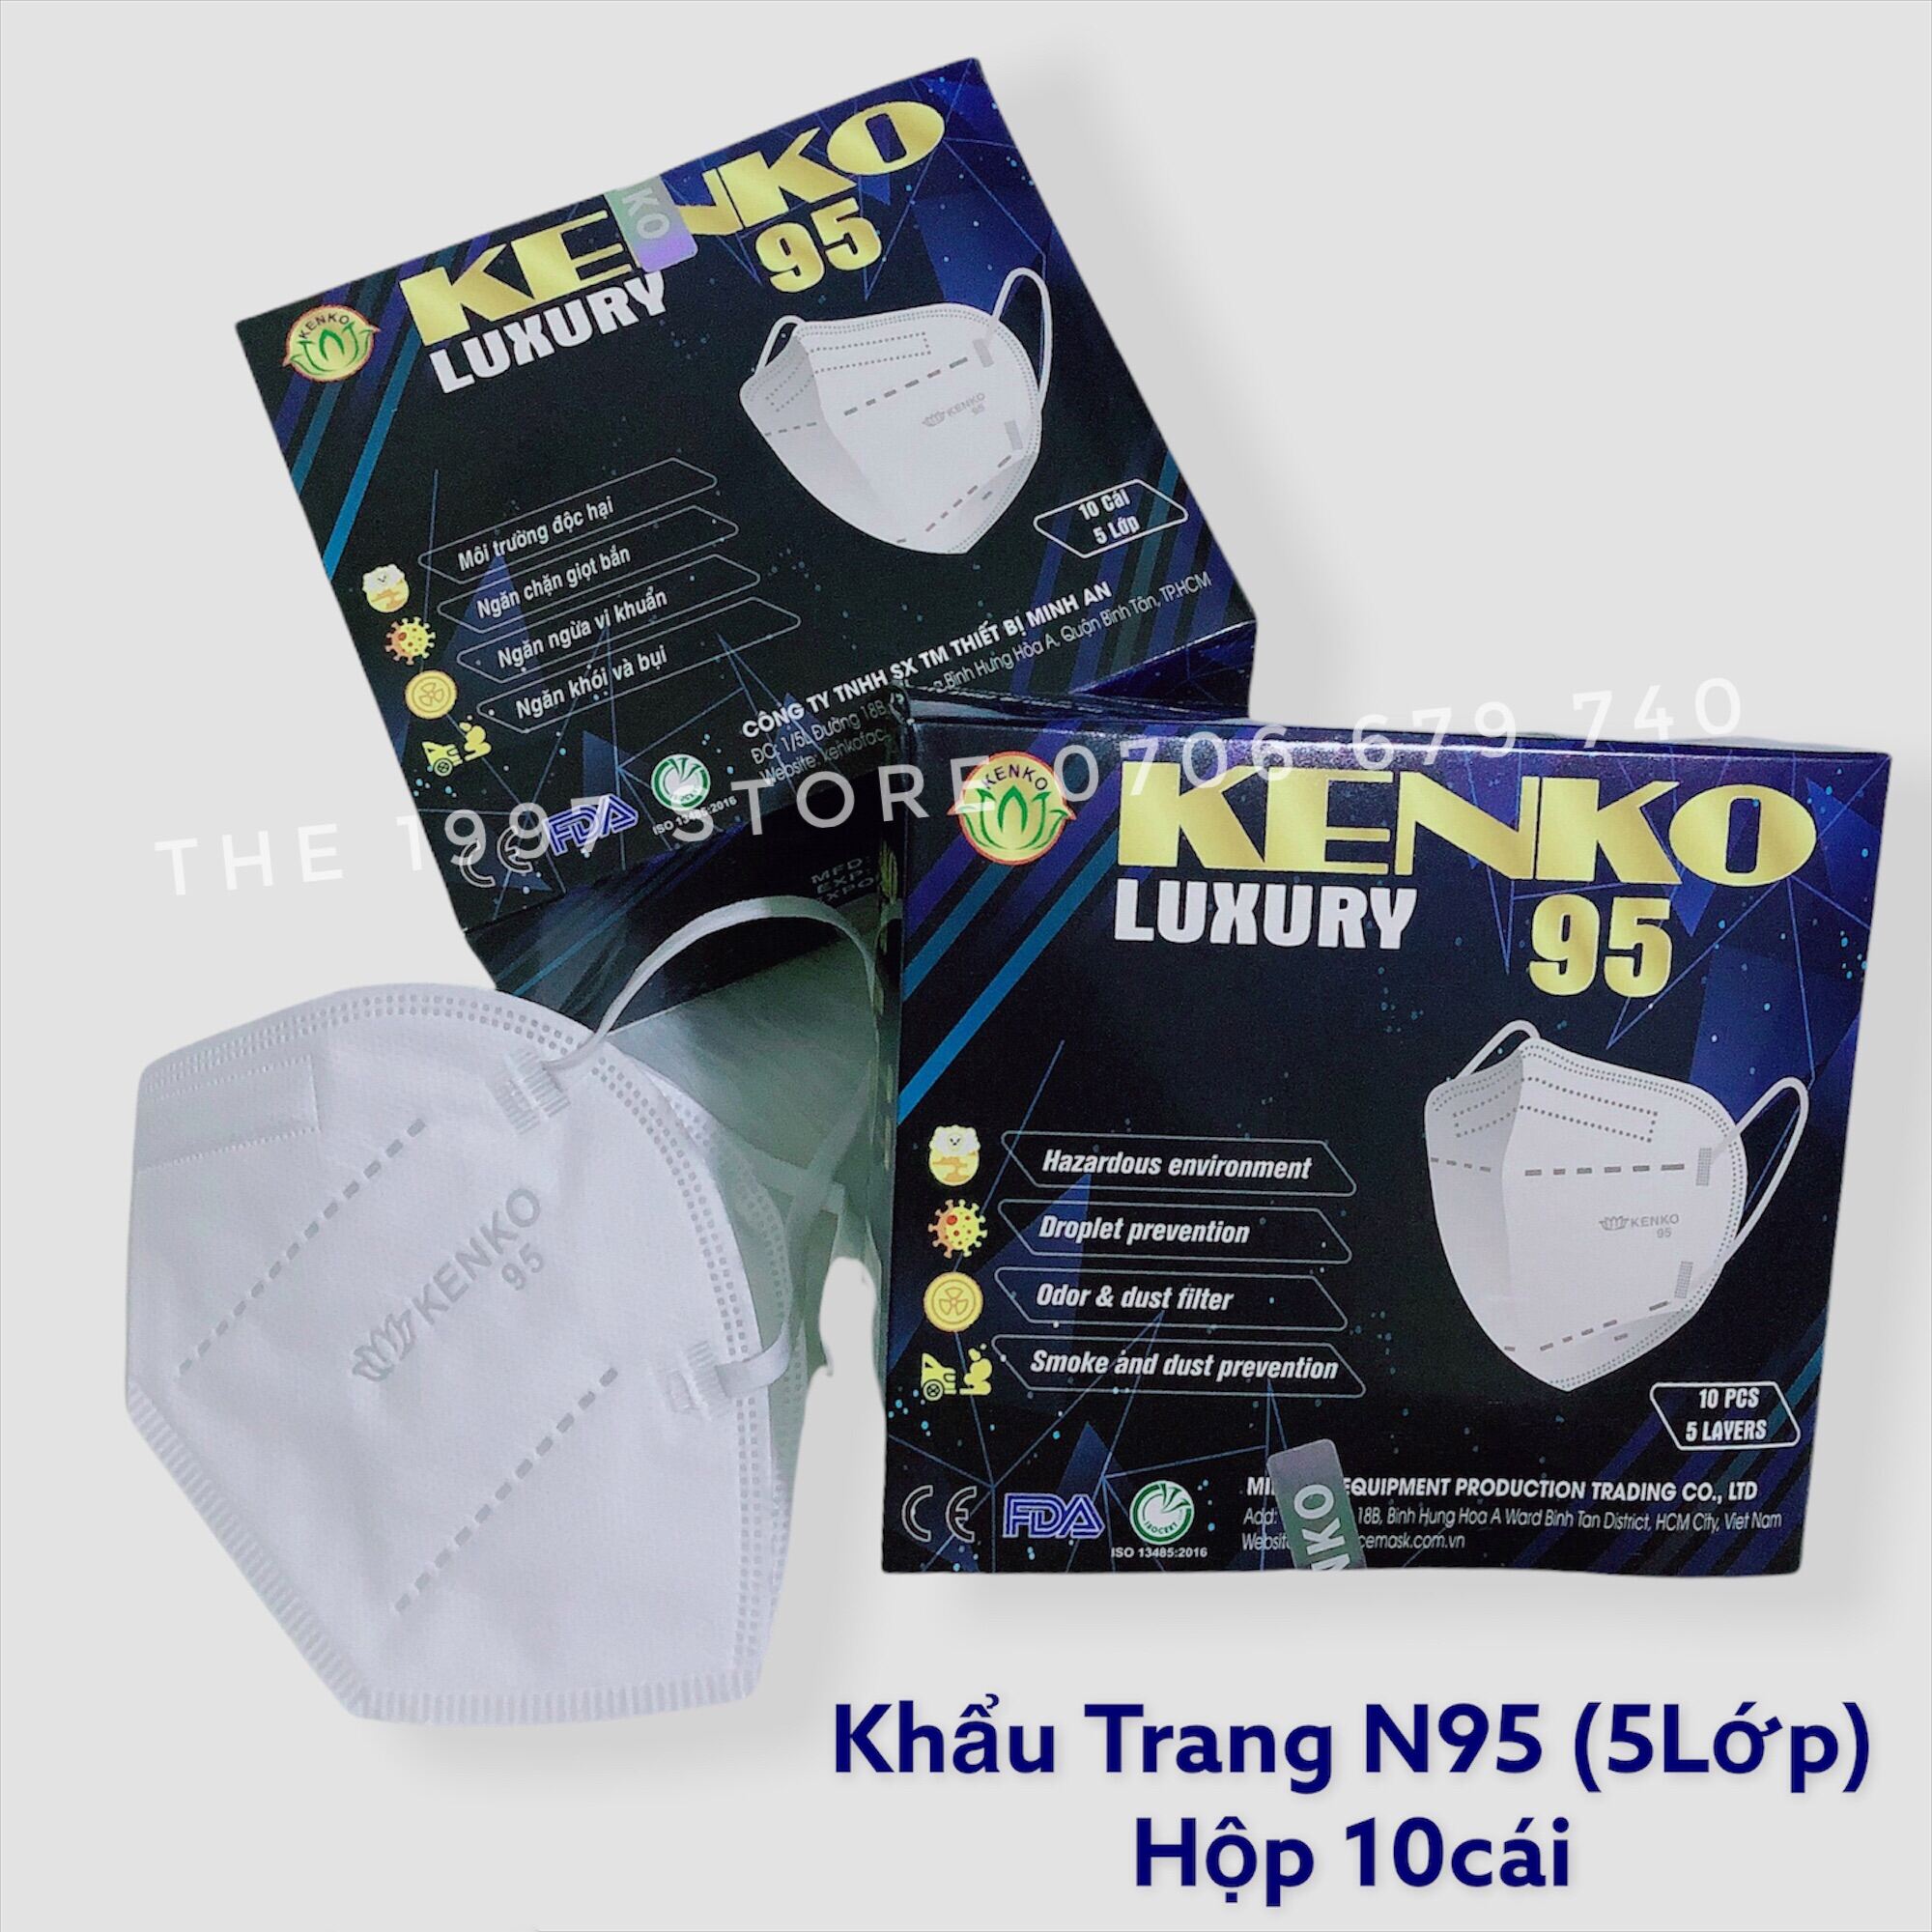 Khẩu Trang Y Tế N95 Kenko cao cấp (5lớp) kháng khuẩn hộp 10cái